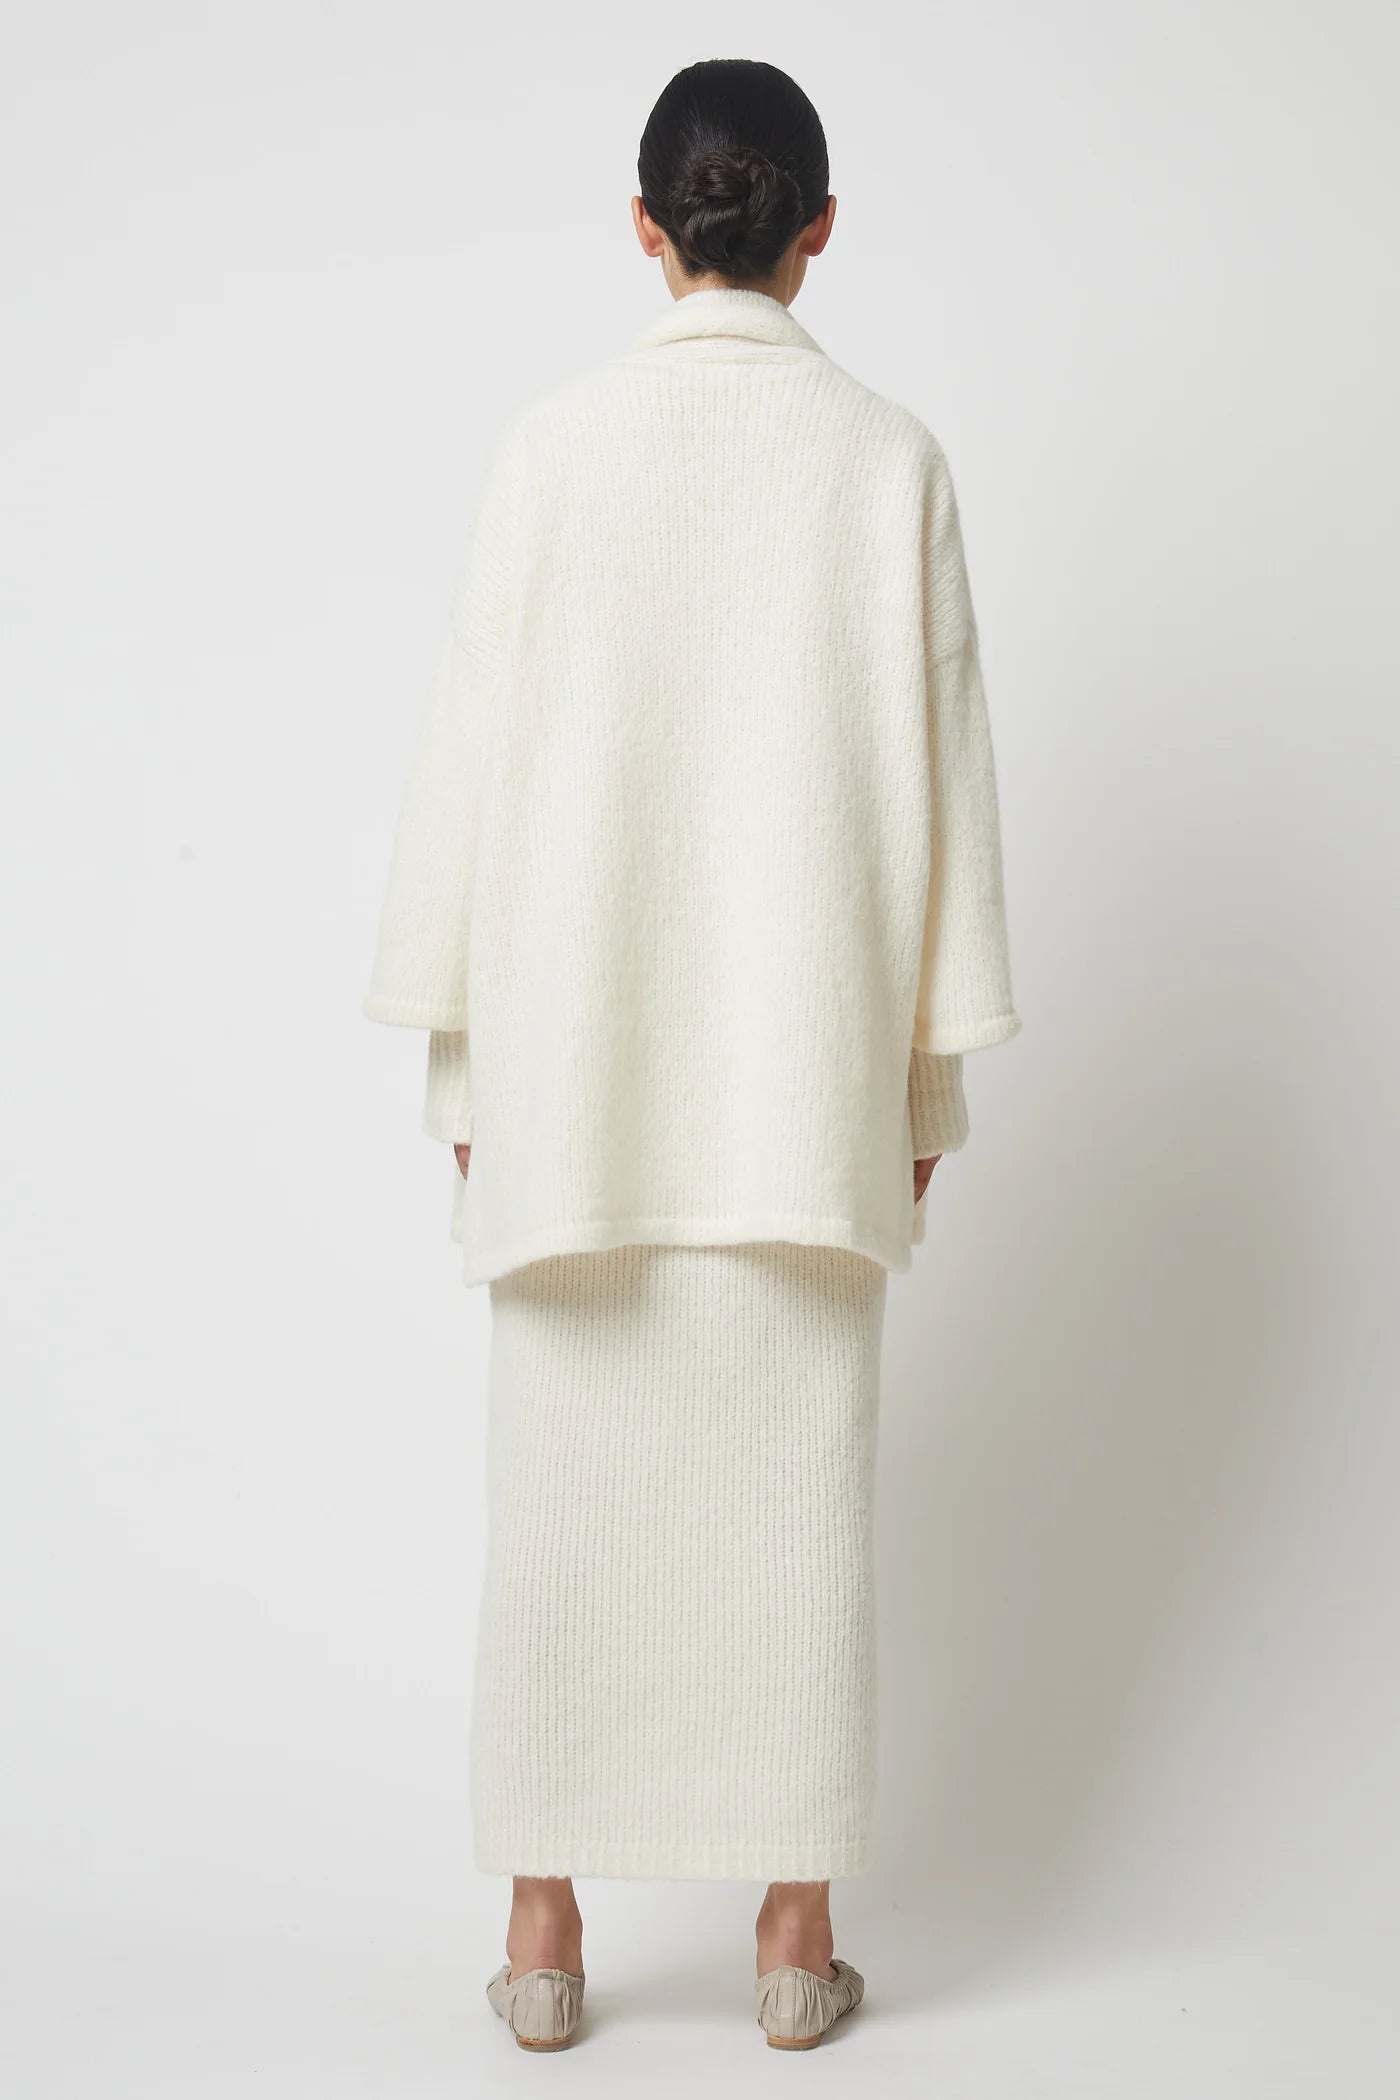 Atelier Delphine | Haori Coat in Baby Alpaca - Cream